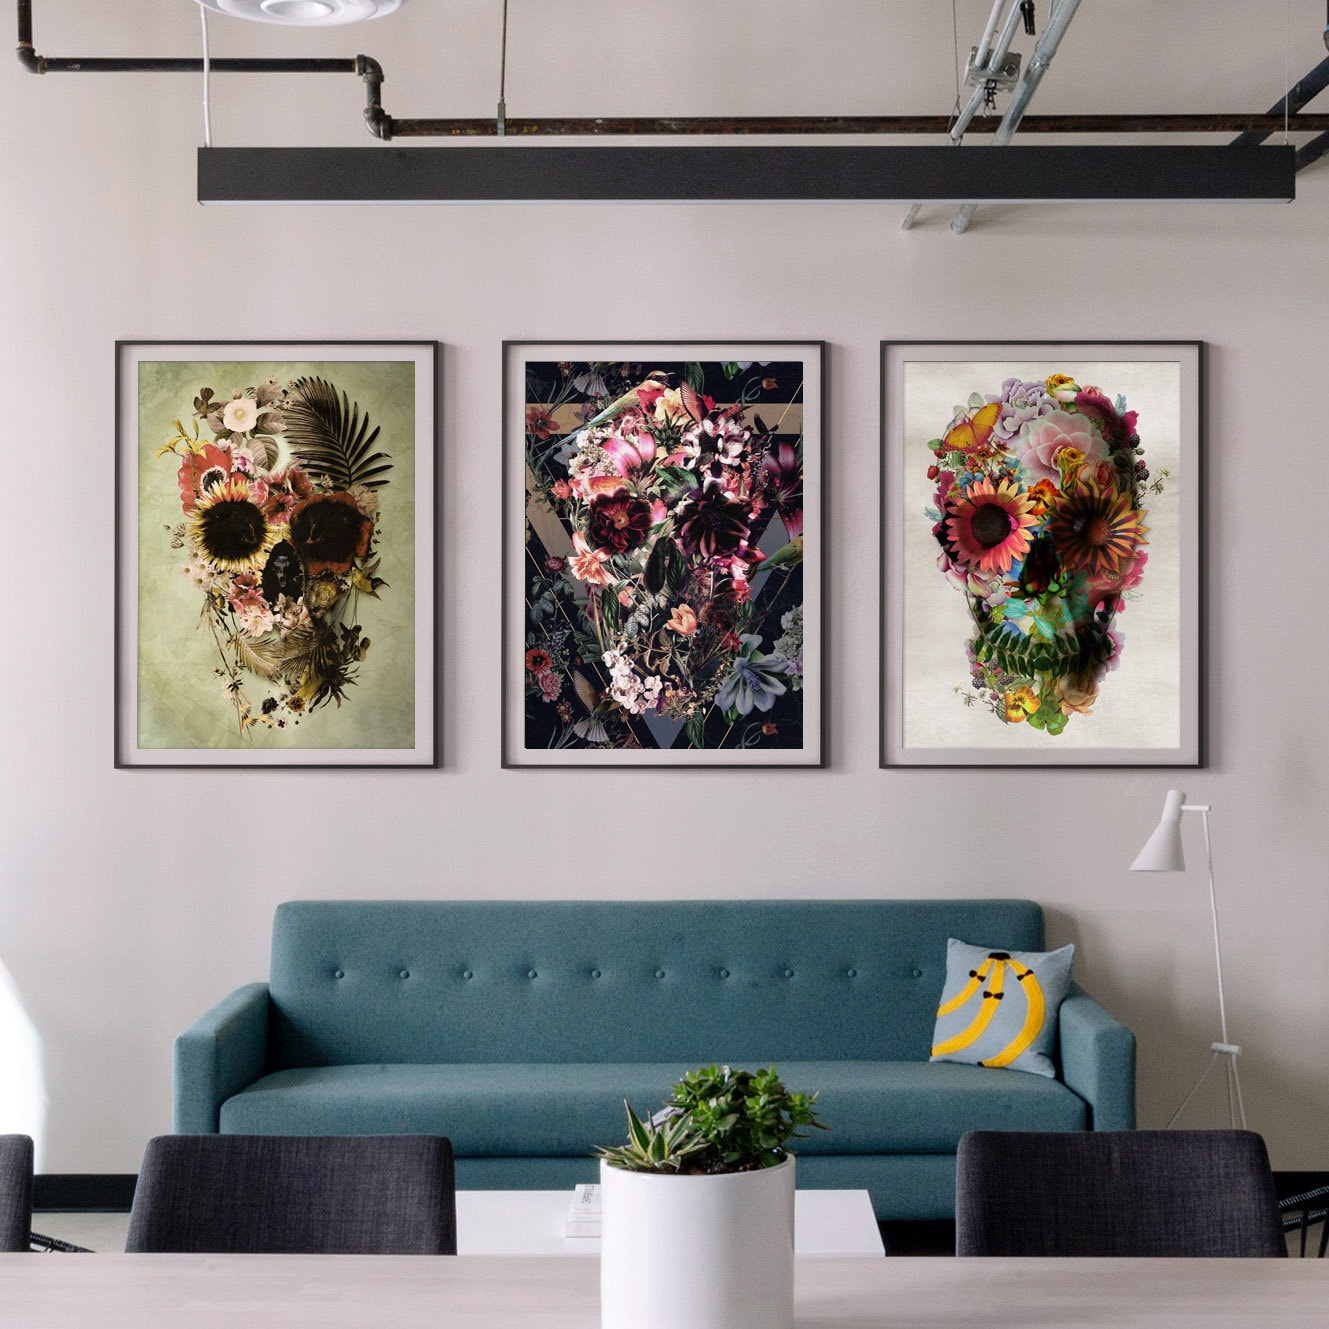 Boho Skull Art Print, Flower Skull Poster Home Decor, Floral Sugar Skull Wall Art Gift, Gothic Floral Print Home Decor, Authentic Skull Art